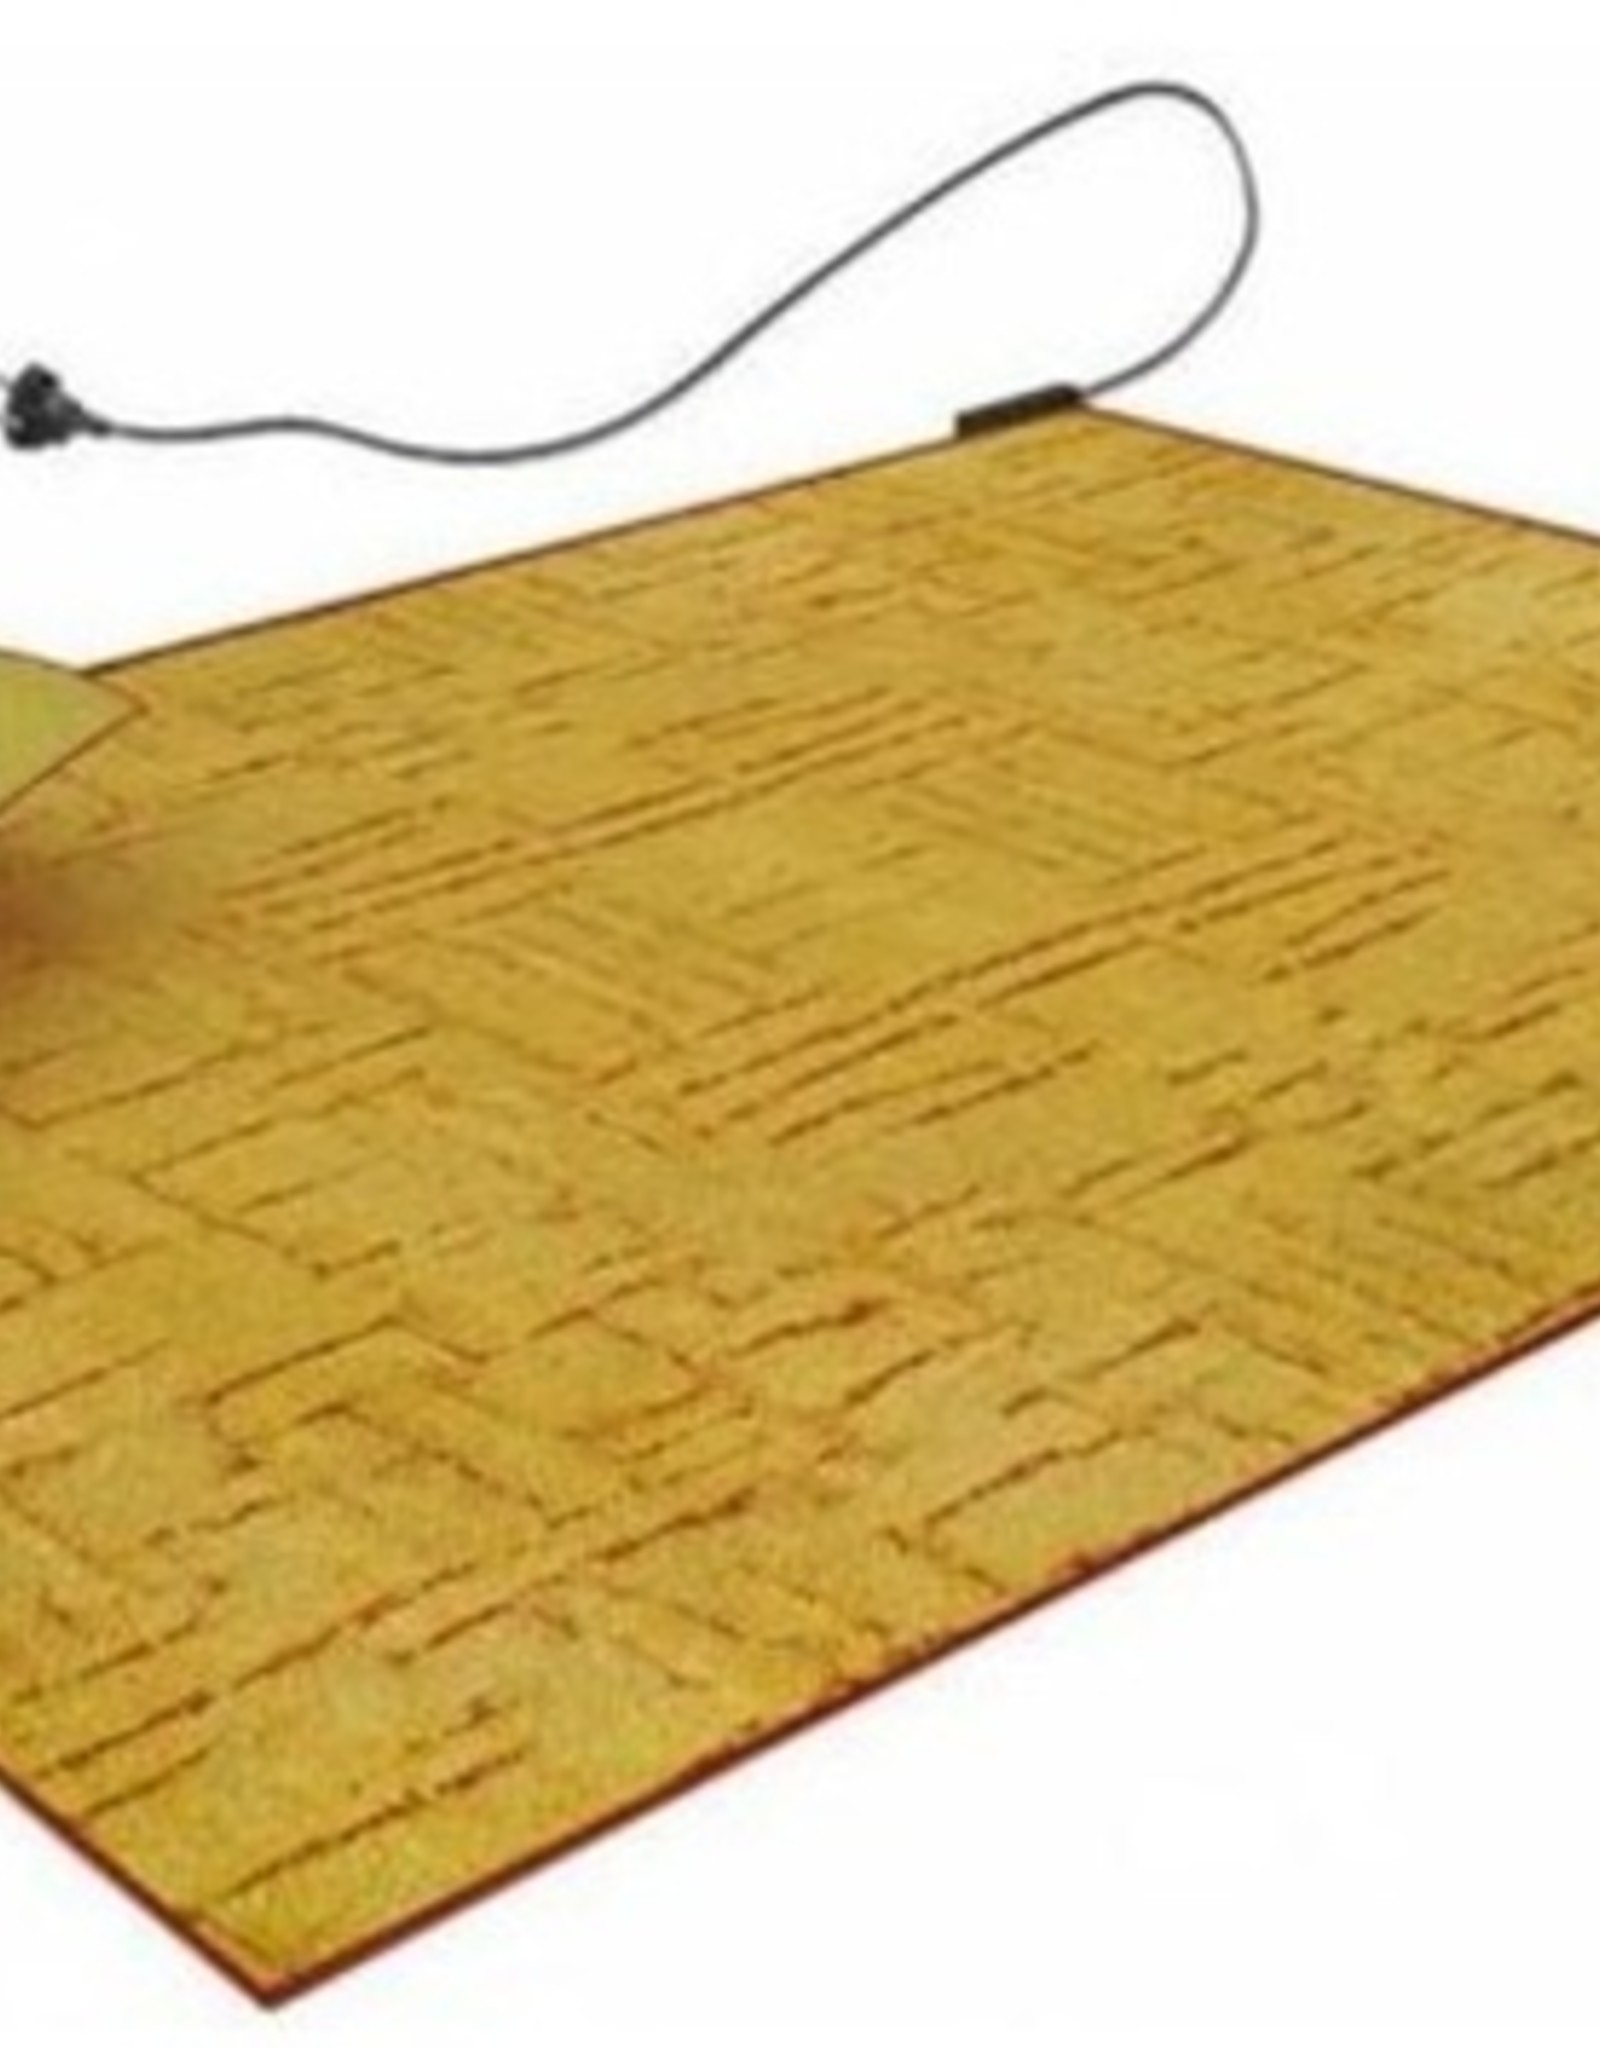 Briesje Autorisatie Omgekeerd Infrarood warmte element geschikt voor gebruik direct onder een kleed of  tapijt - Infraroodhandel